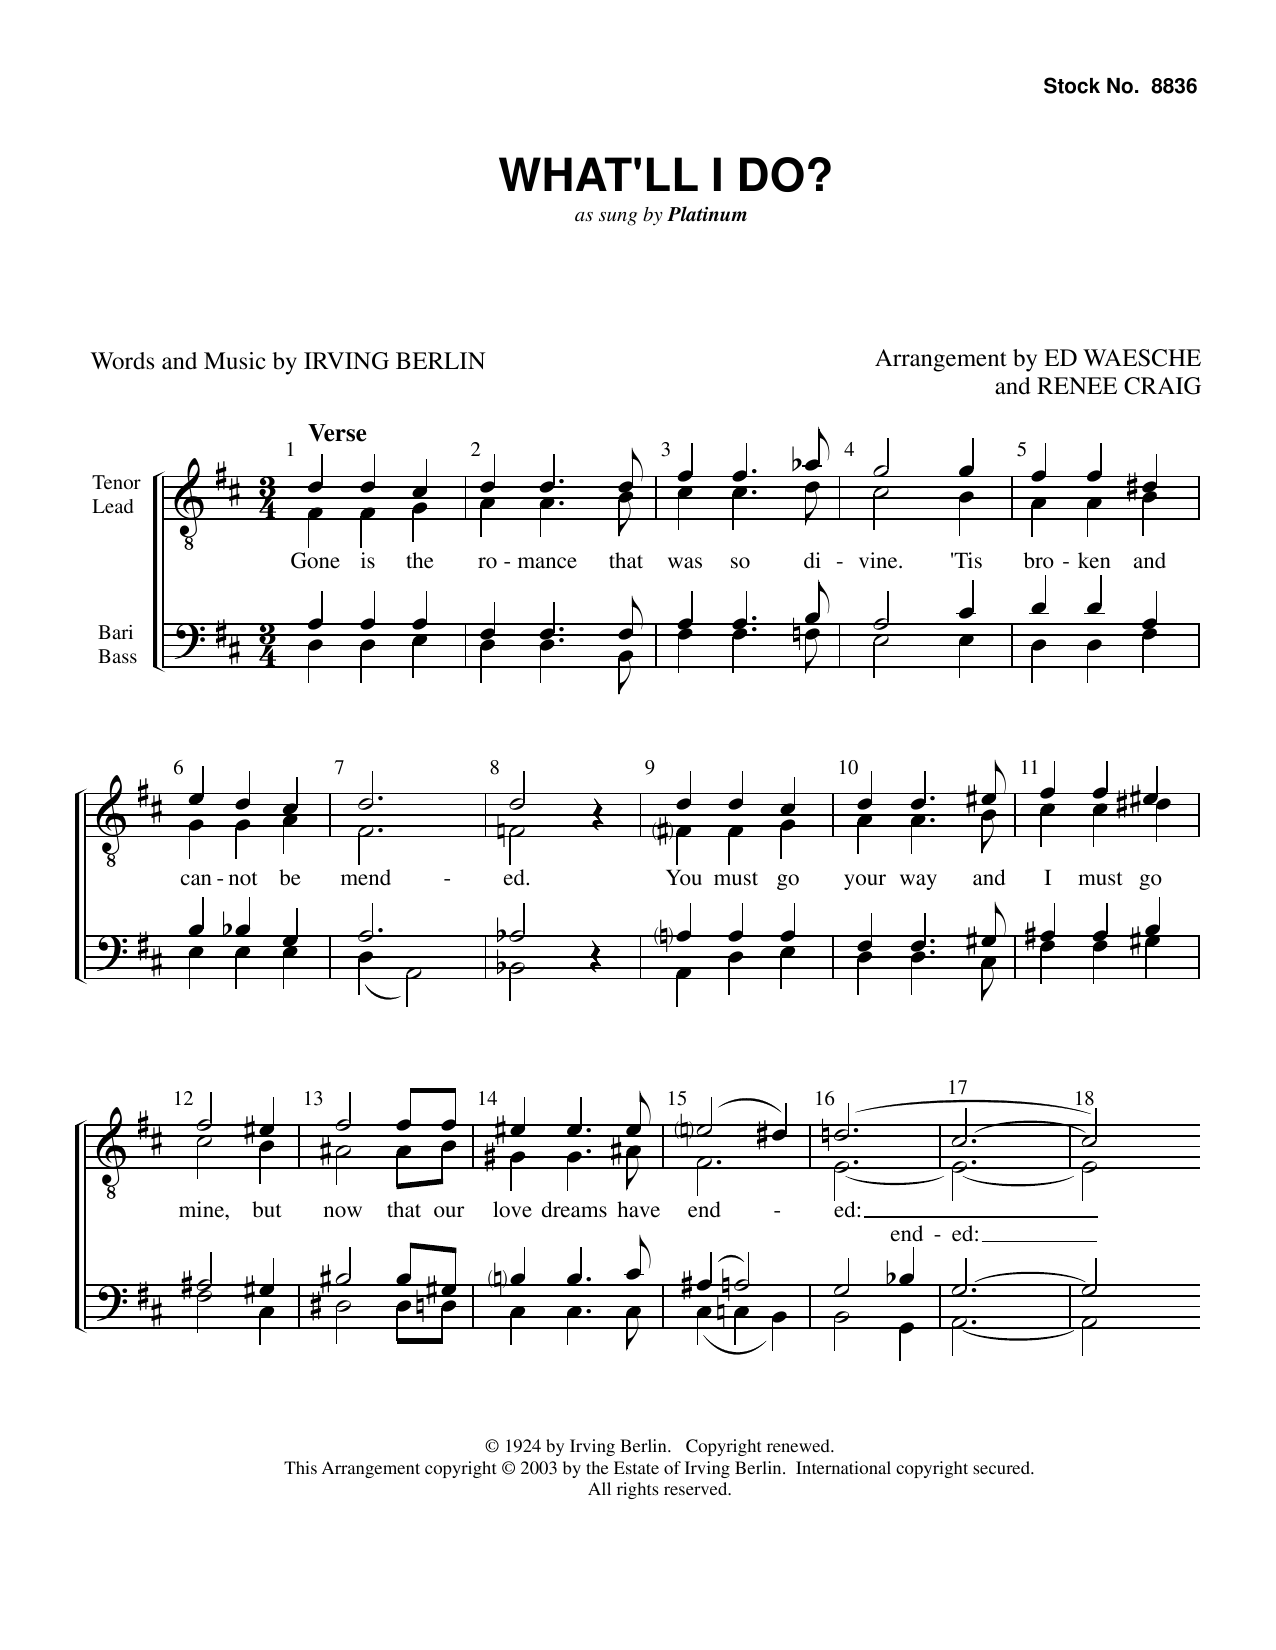 Platinum What'll I Do? (arr. Ed Waesche, Renee Craig) Sheet Music Notes & Chords for TTBB Choir - Download or Print PDF